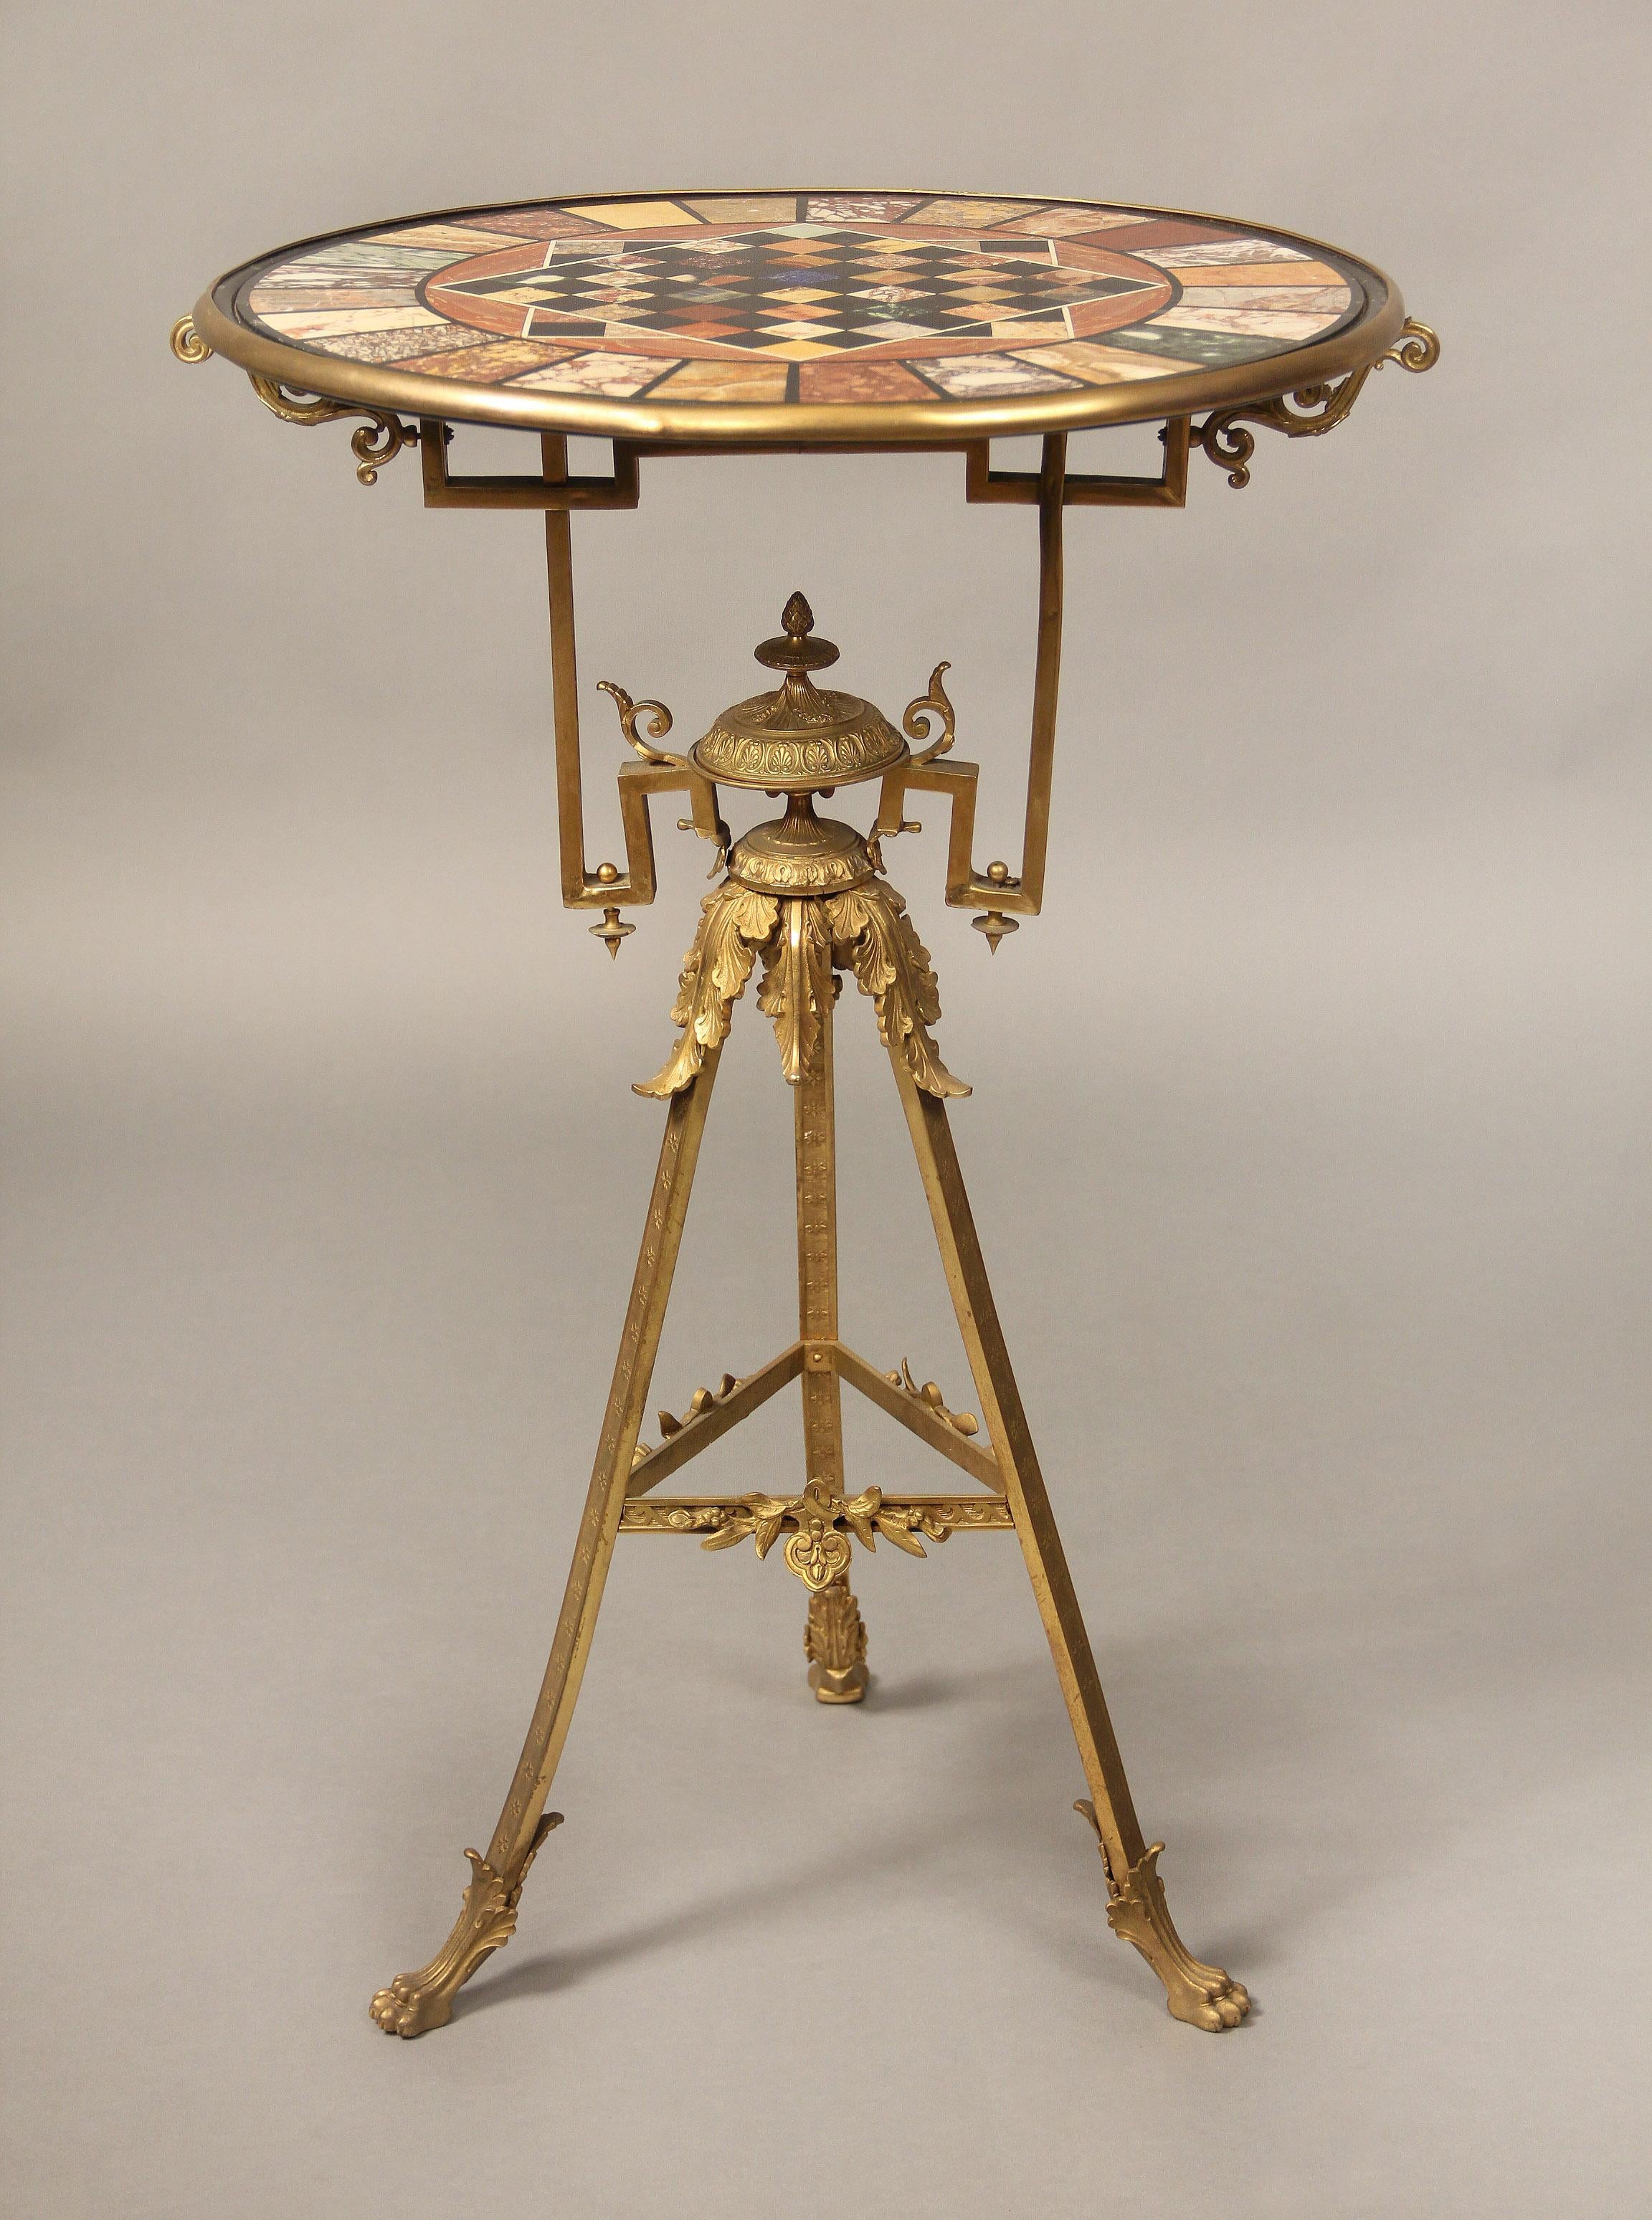 Une très intéressante table de jeu italienne de la fin du 19ème siècle en bronze doré avec plateau en marbre

Le plateau circulaire incrusté d'un motif d'échiquier est entouré d'une variété de marbres dont du lapis-lazuli, du verde antico, de la